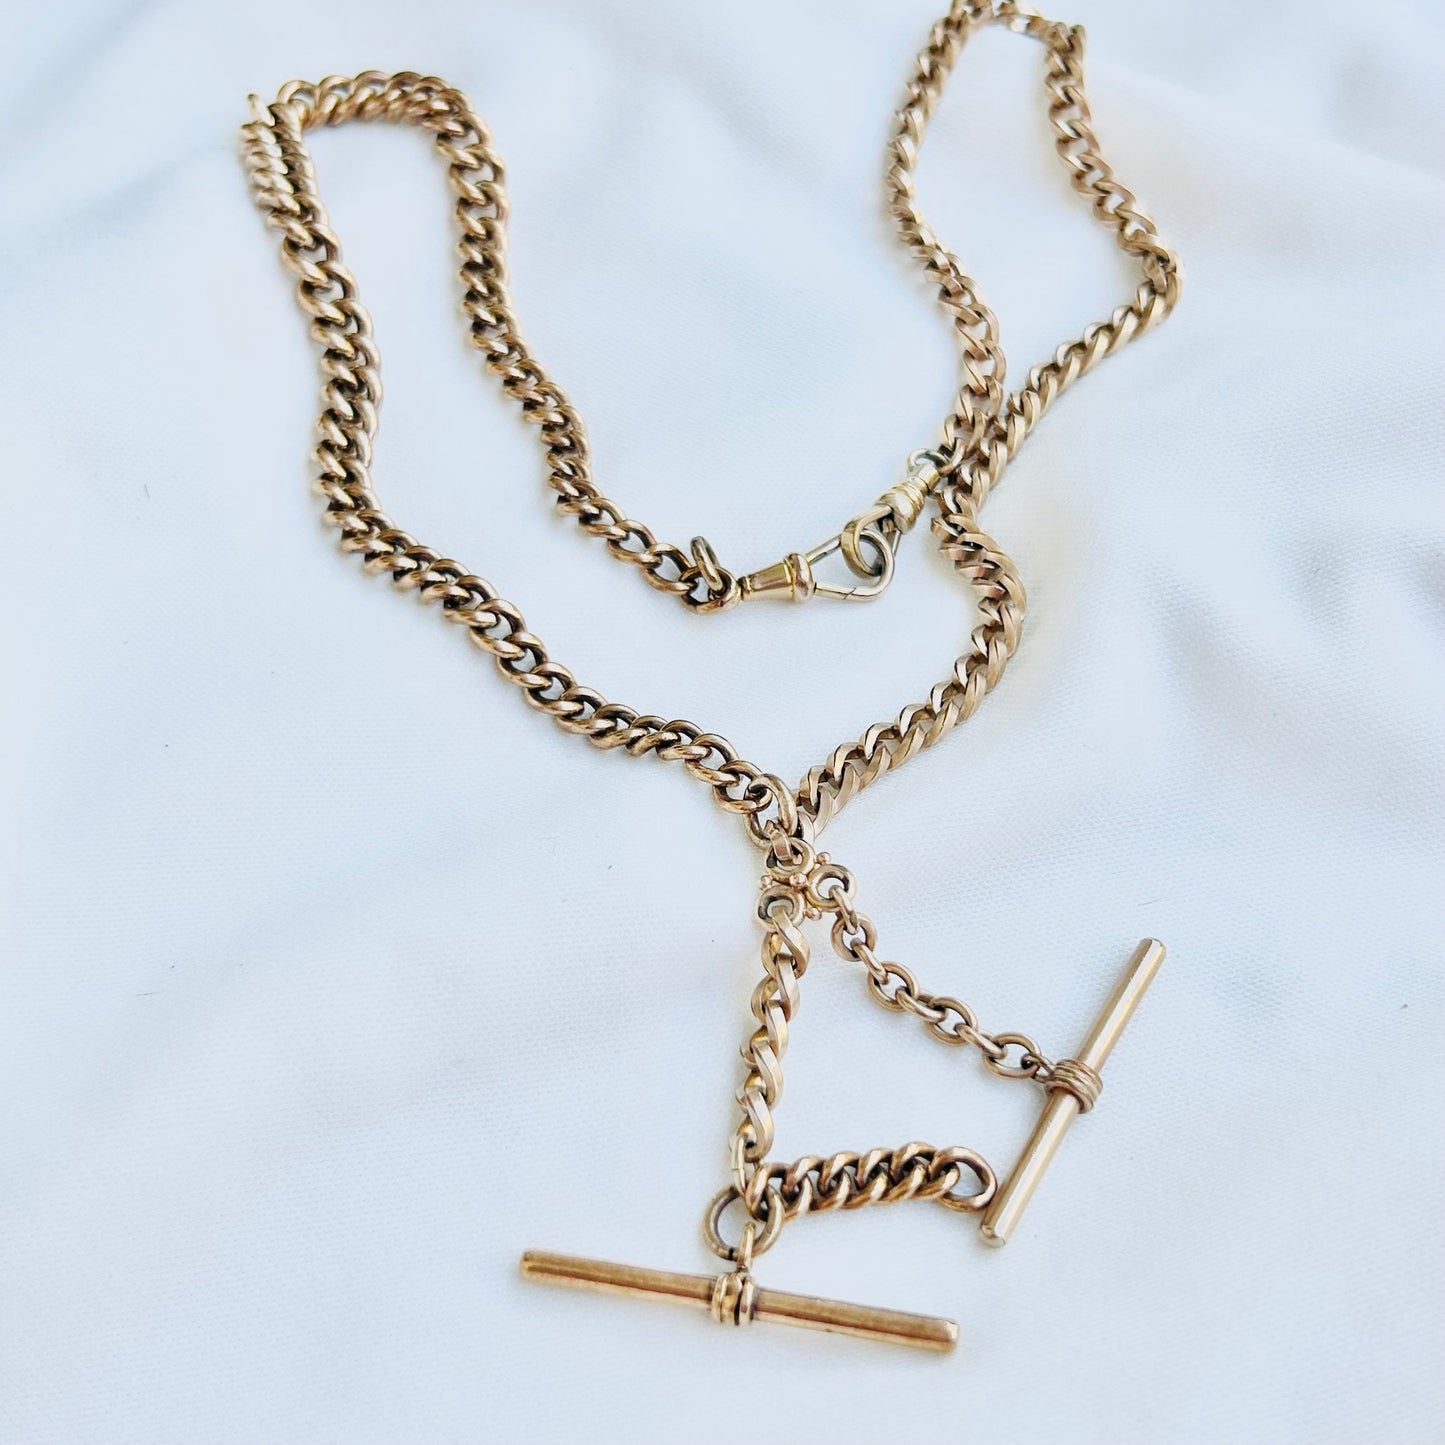 Antique Rose Gold Filled T-Bar Necklace